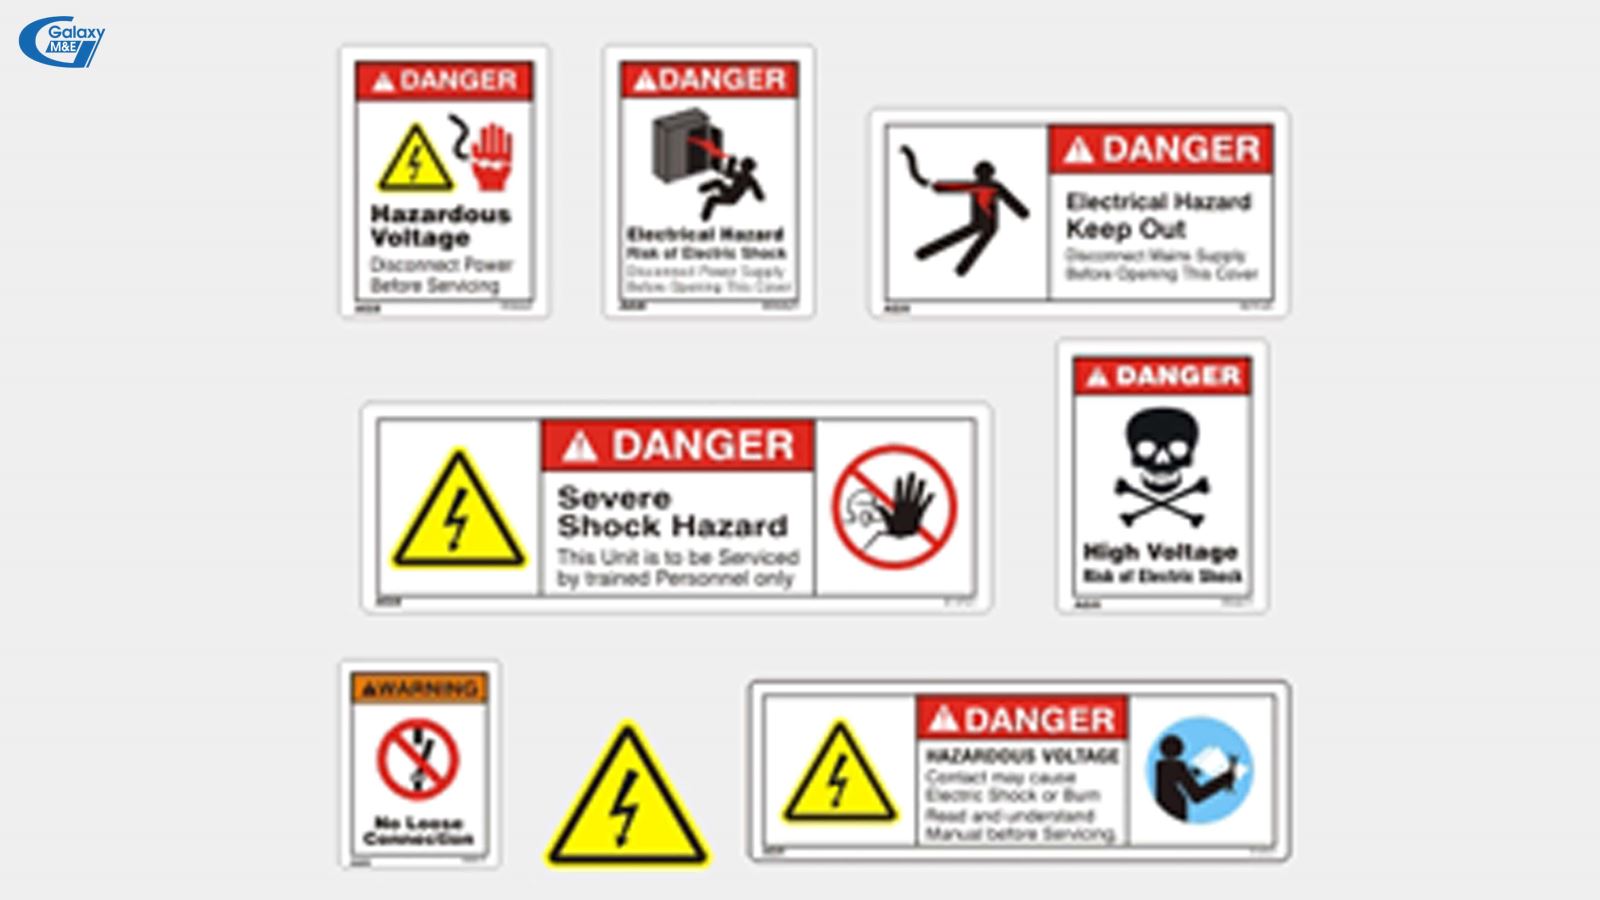 Các biển hiệu cảnh báo tai nạn điện theo quy chuẩn quốc tế | Galaxy M&E.